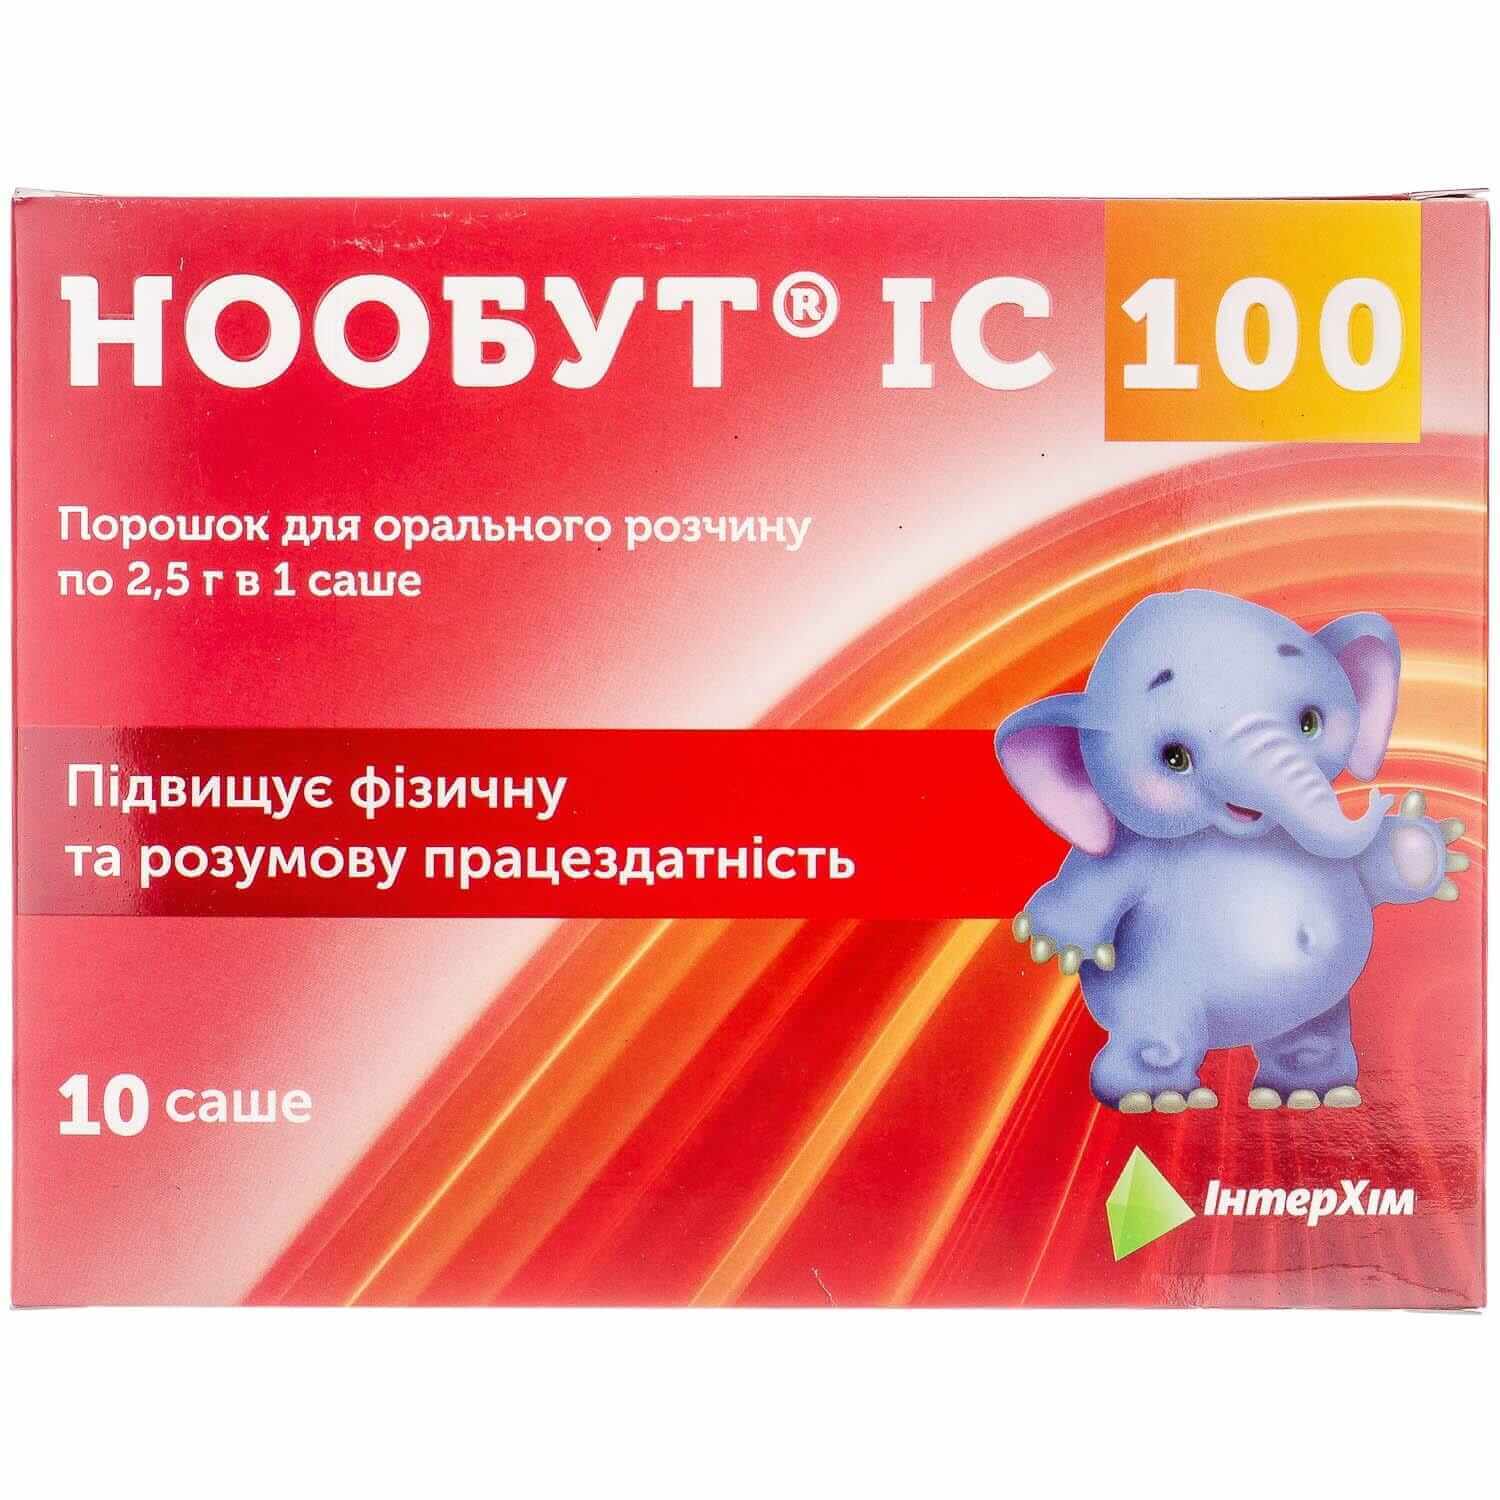 

Нообут IC 100 пор. д/оральн. р-ну 100 мг/доза саше 2,5 г №10, пор. д/оральн. р-ну 100 мг/доза саше 2,5 г